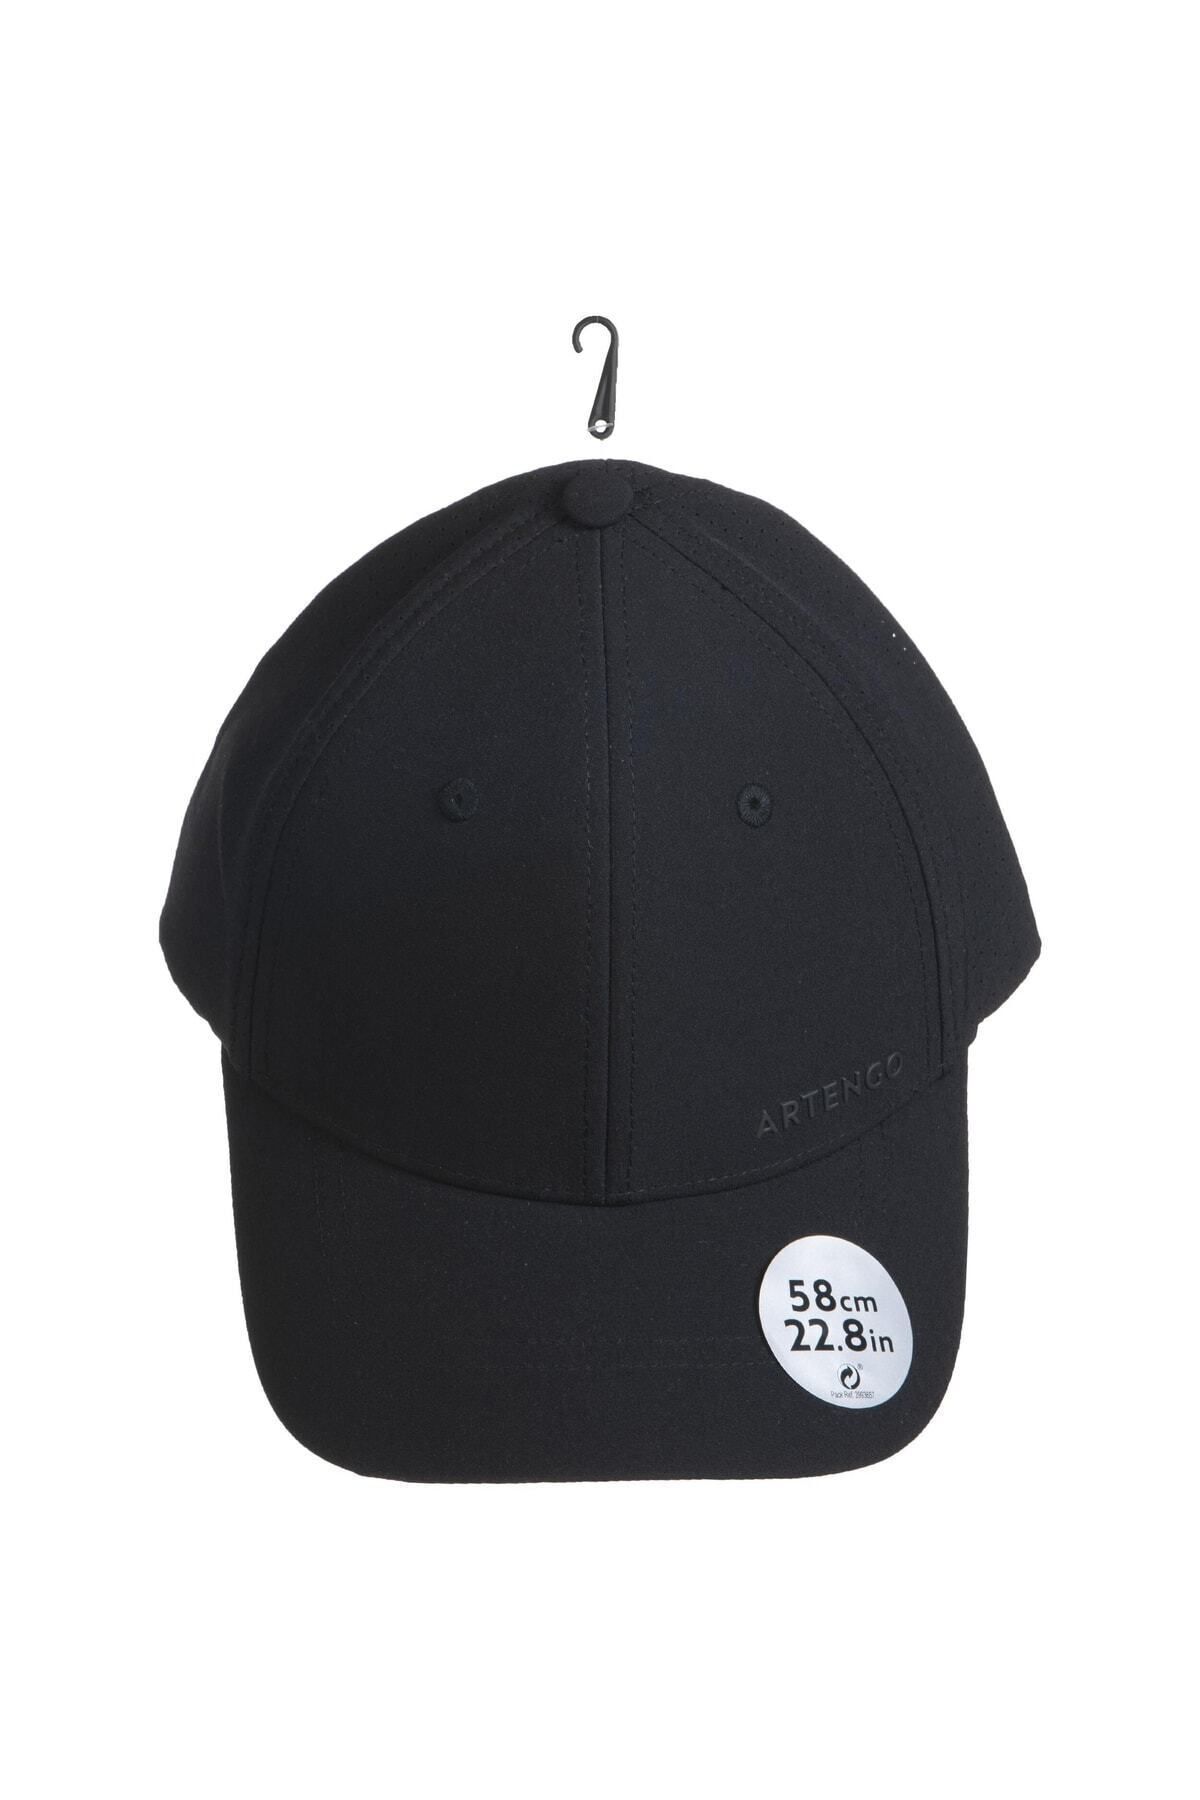 Decathlon Artengo Tenis Şapkası - Siyah - Boy 58 - 900